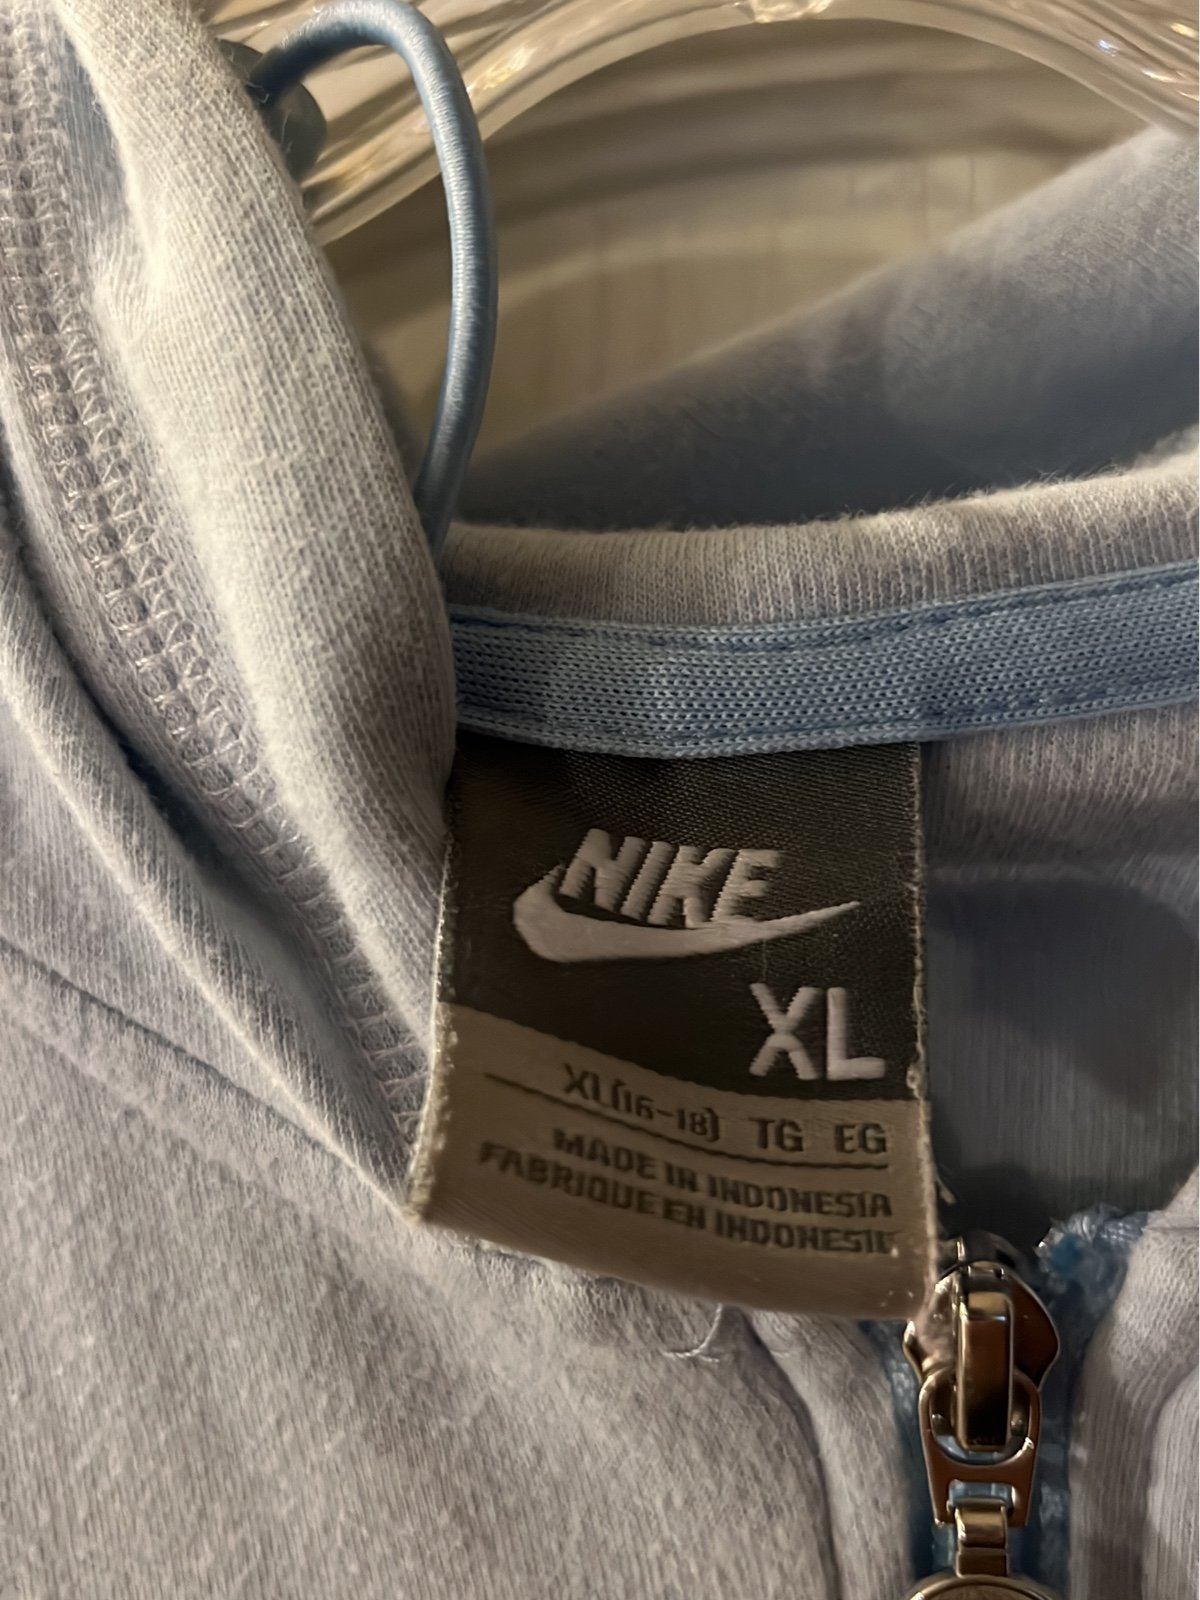 high discount Nike hoodie women’s xl pkrrAYqHI Buying Cheap